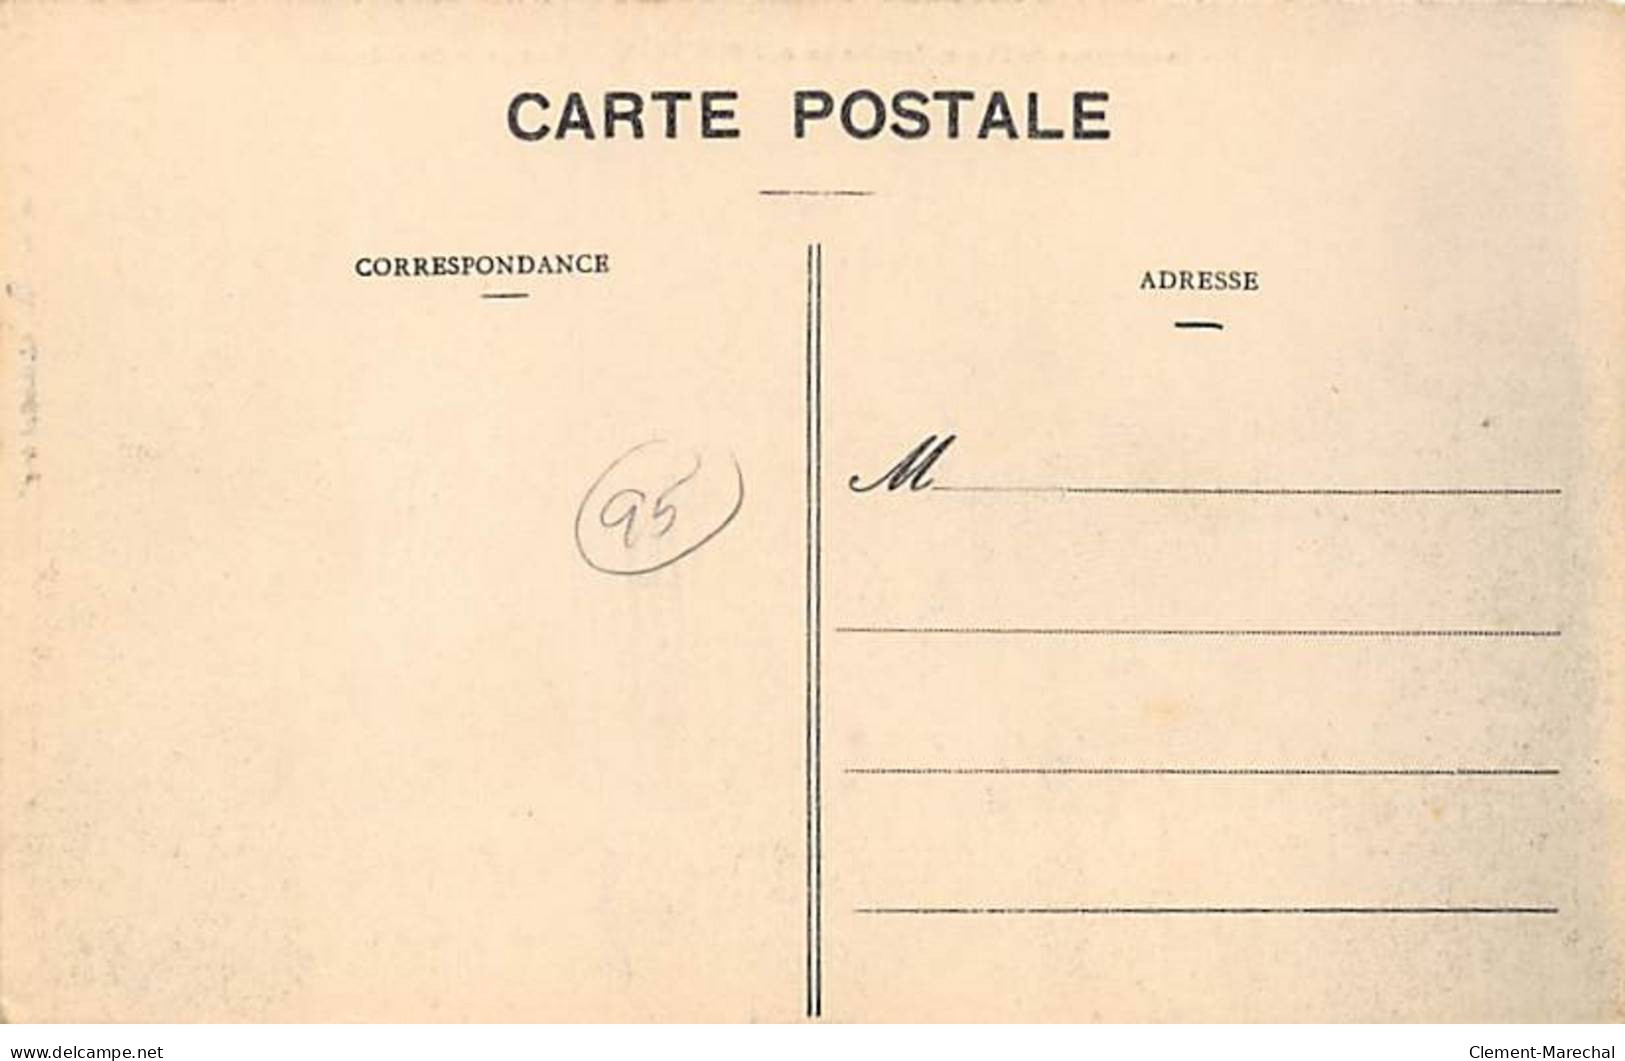 PONTOISE - Les Inondations De L'Oise 1910 - Vue Prise Du Château - Très Bon état - Pontoise